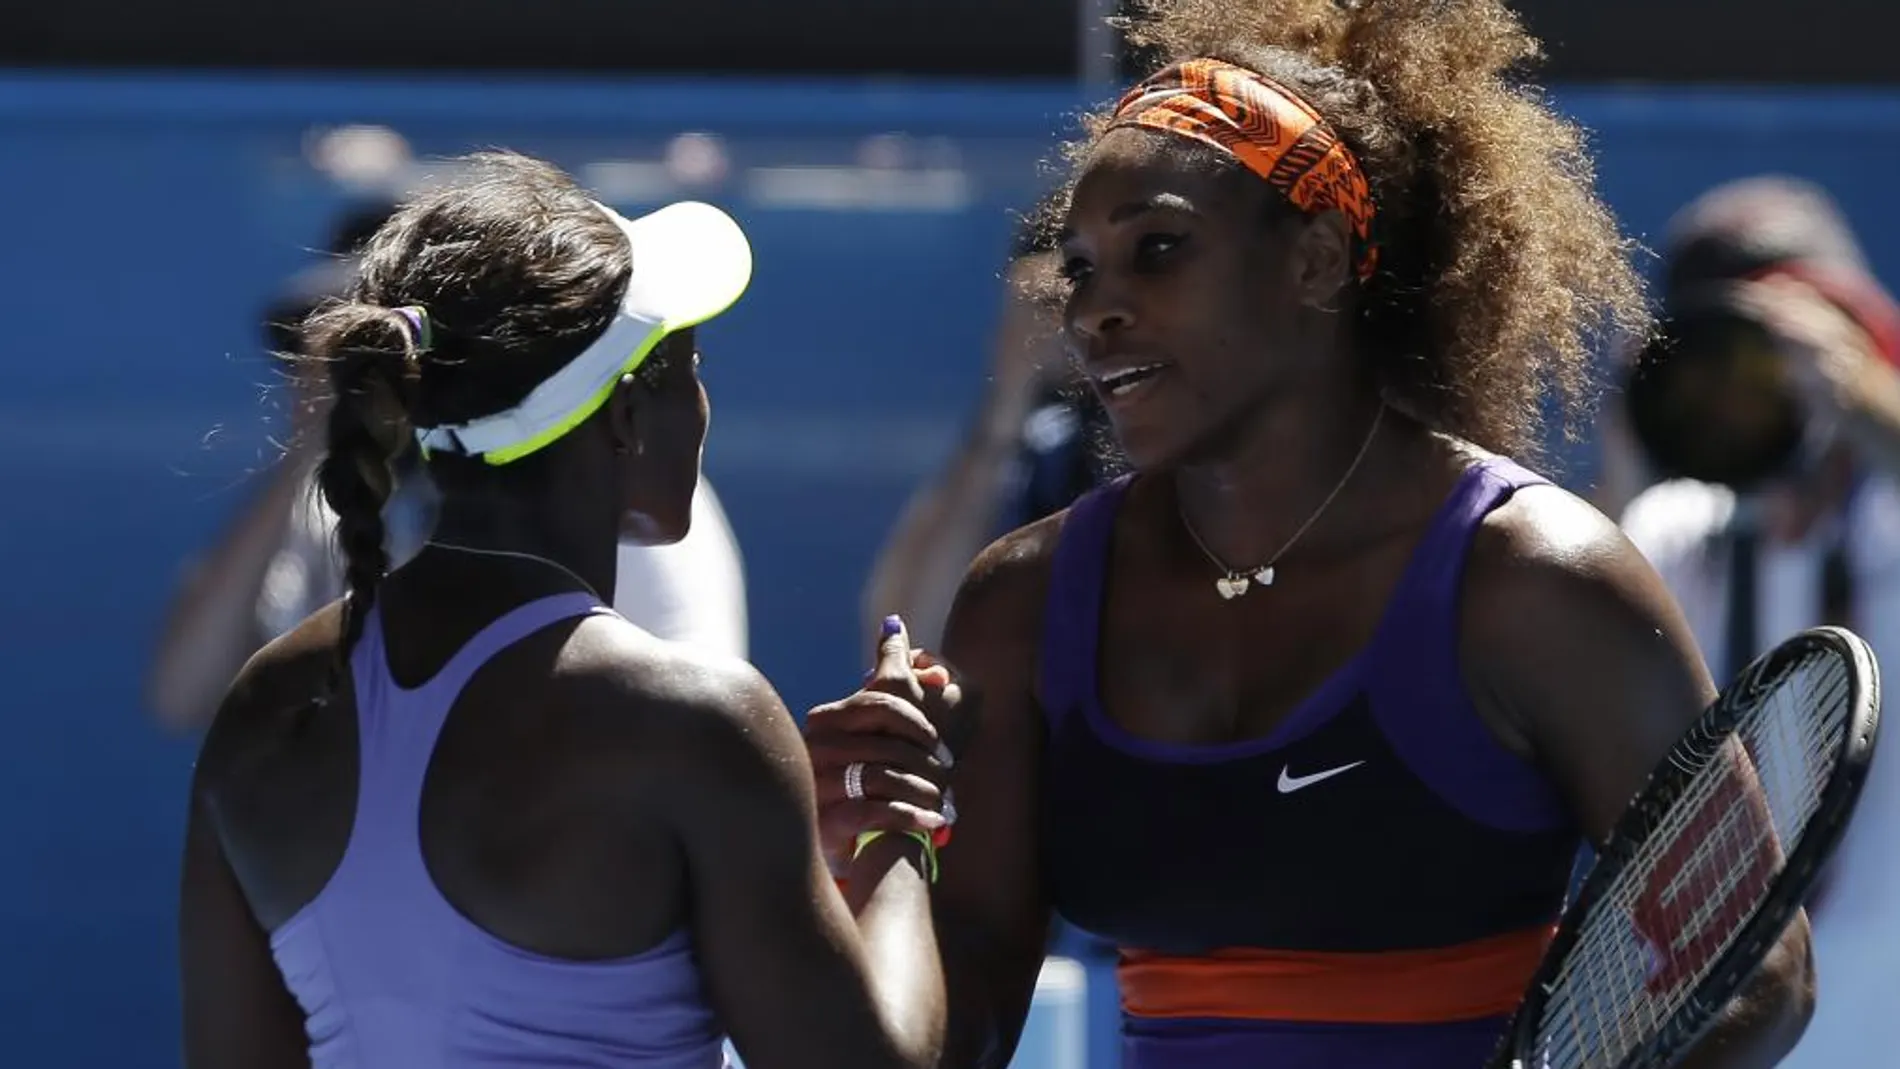 Serena Williams desplaza del segundo puesto a Sharapova en el ranking WTA, liderado por Azarenka